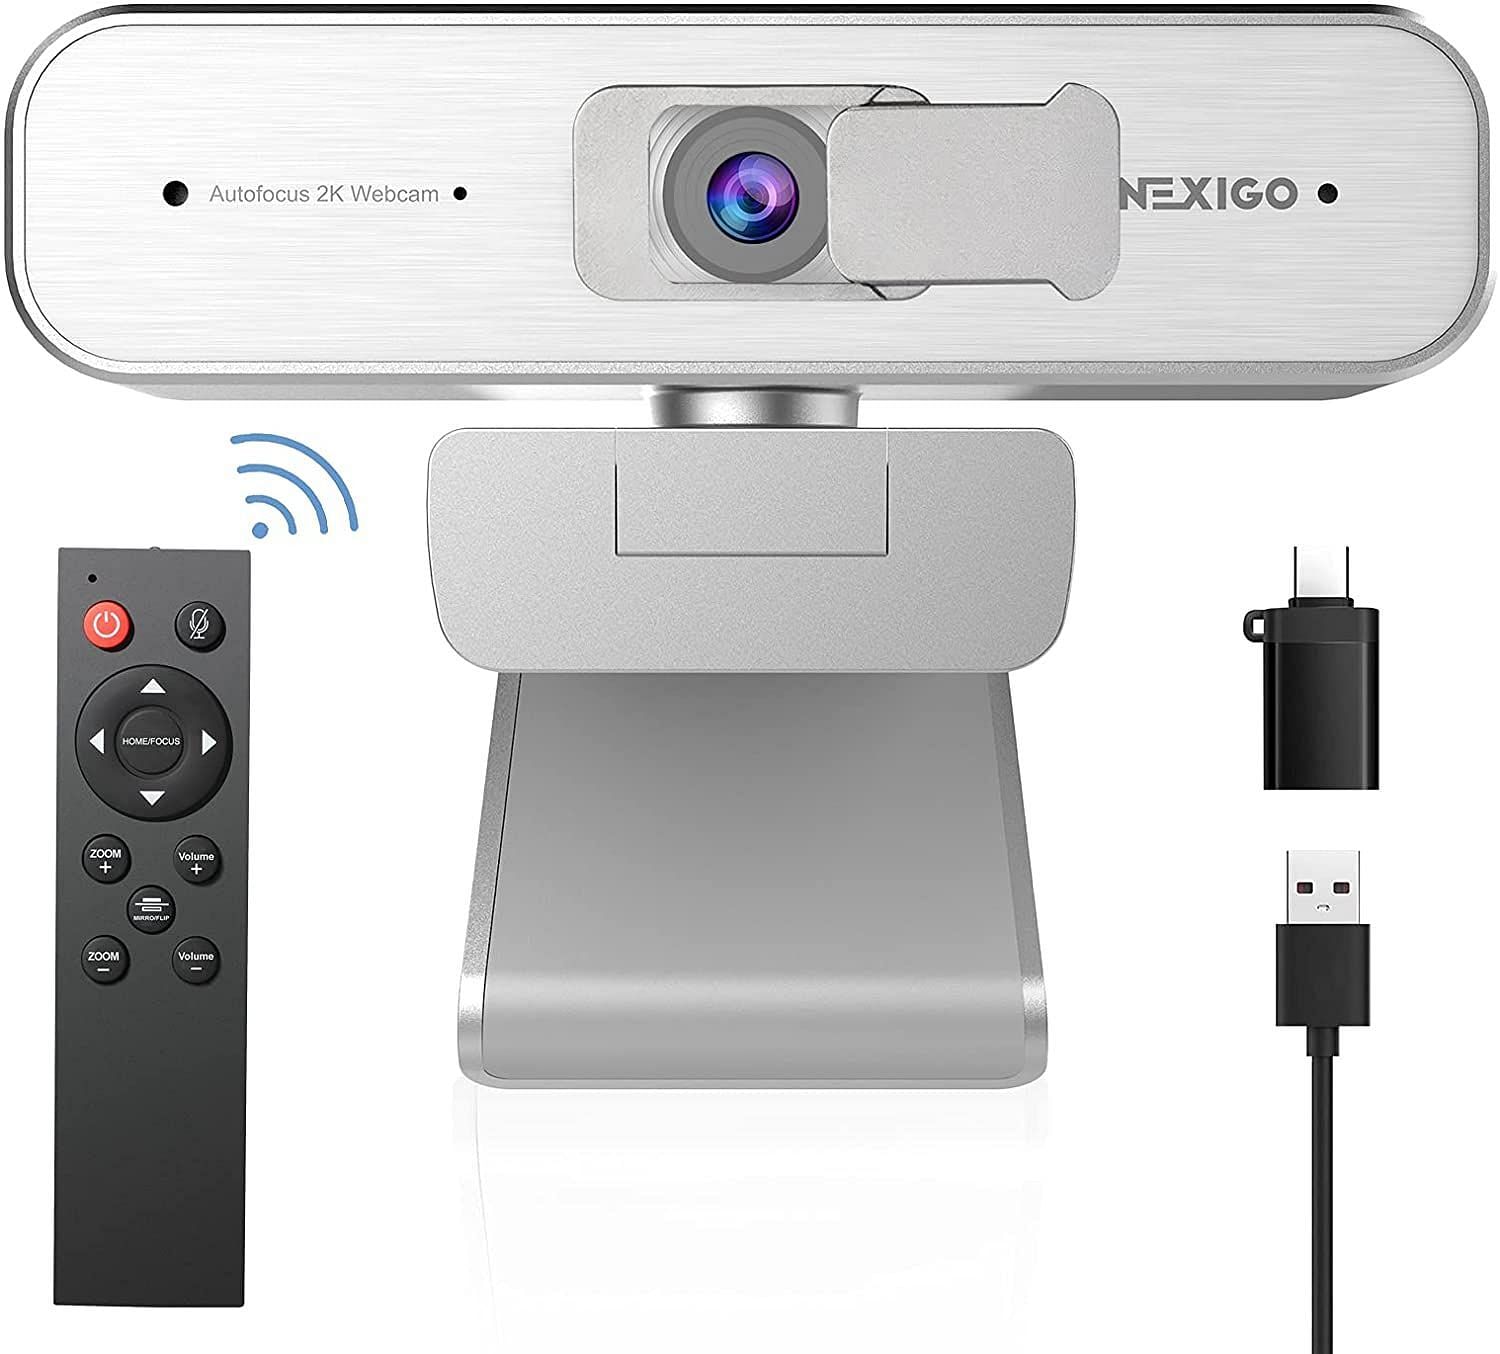 The NexiGo N940P Webcam (Image via Amazon)